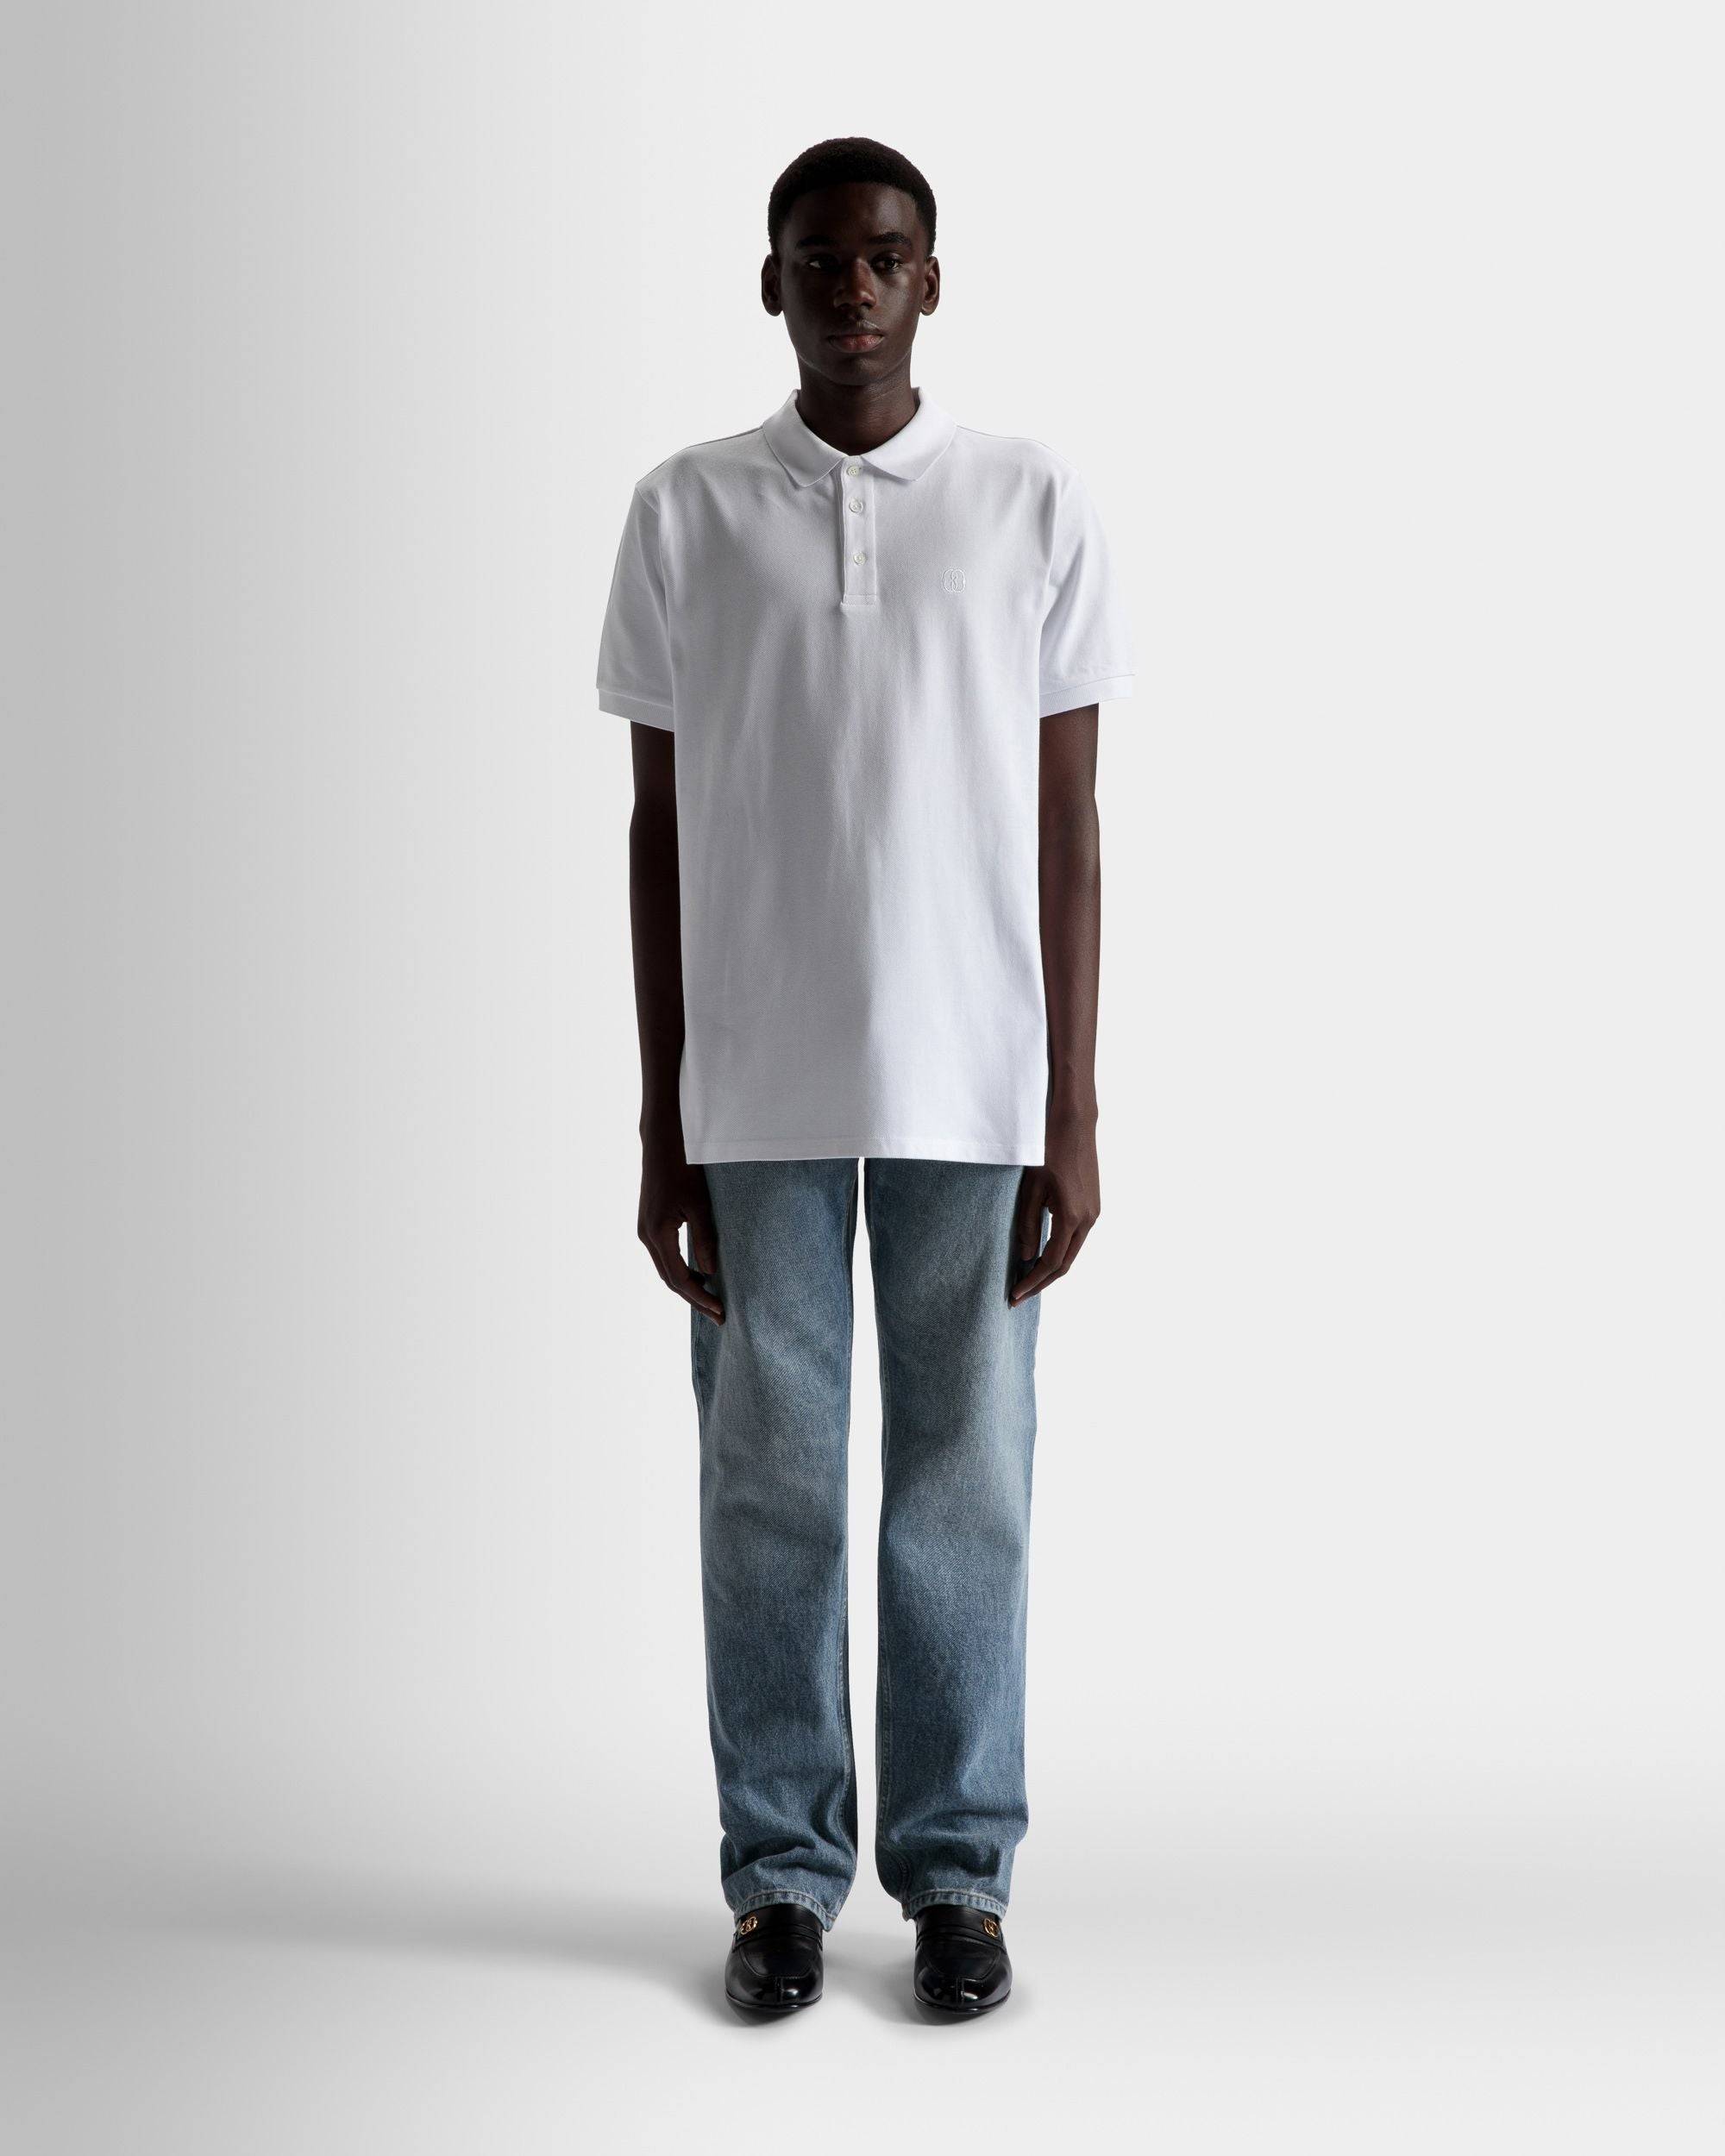 Kurzarm-Poloshirt | Poloshirt für Herren | Weiße Baumwolle | Bally | Model getragen Vorderseite